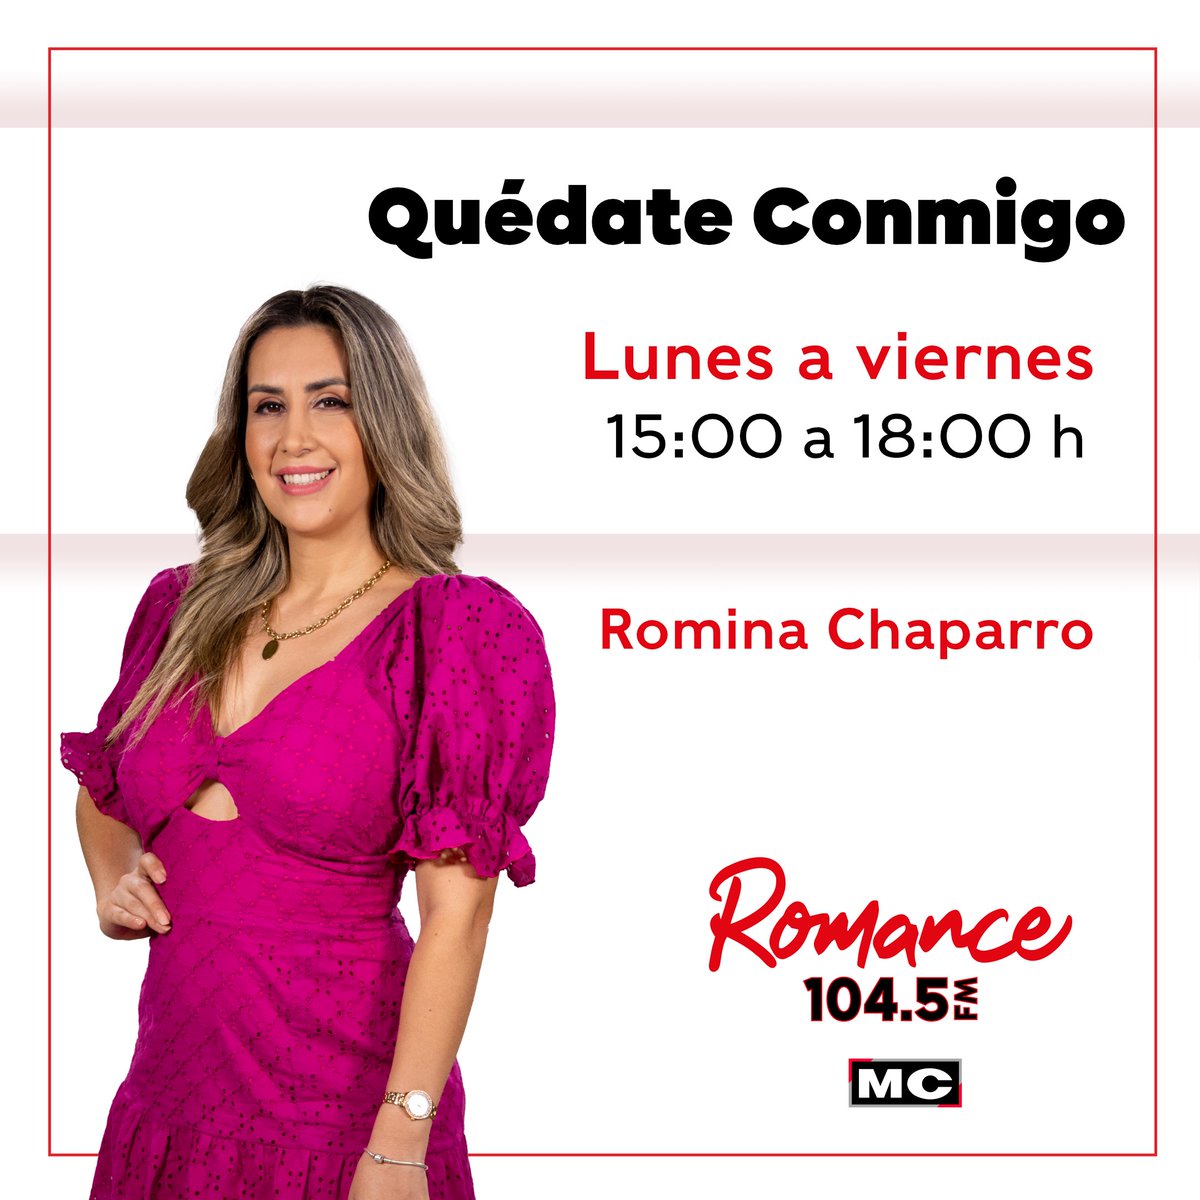 #RomiChaparro con #QuedateConmigo por la 104.5 FM Alegrando tu tarde con las mejores canciones hasta las 18:00 hs. #RomanceFM 📻💕 Te va enamorar... 🔊 Escucha la radio más romántica desde la web: megacadena.com.py 📻🎶💞